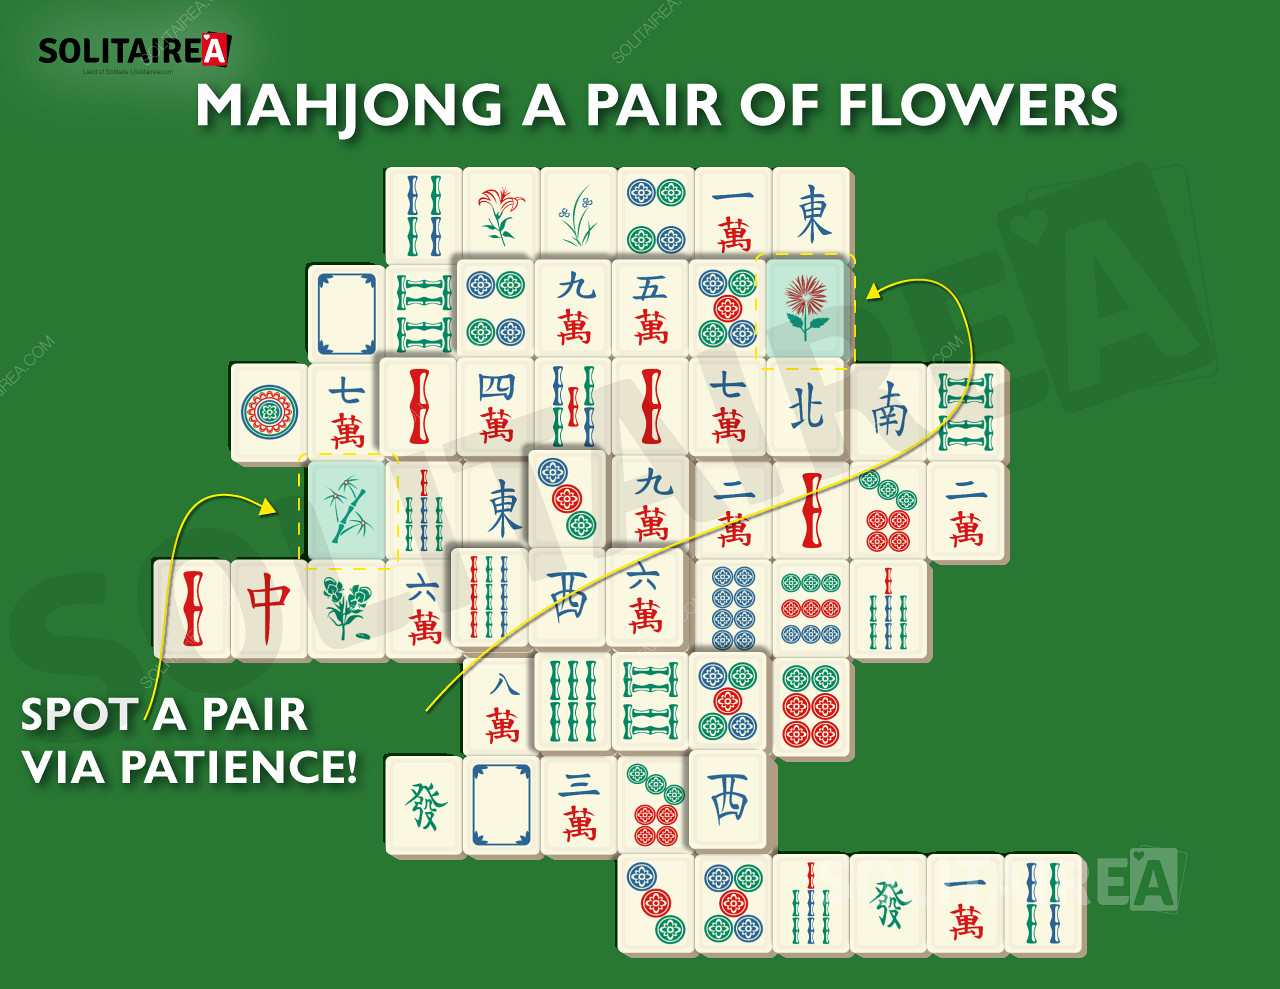 Gambar Mahjong Solitaire yang menunjukkan pilihan ubin yang khas.